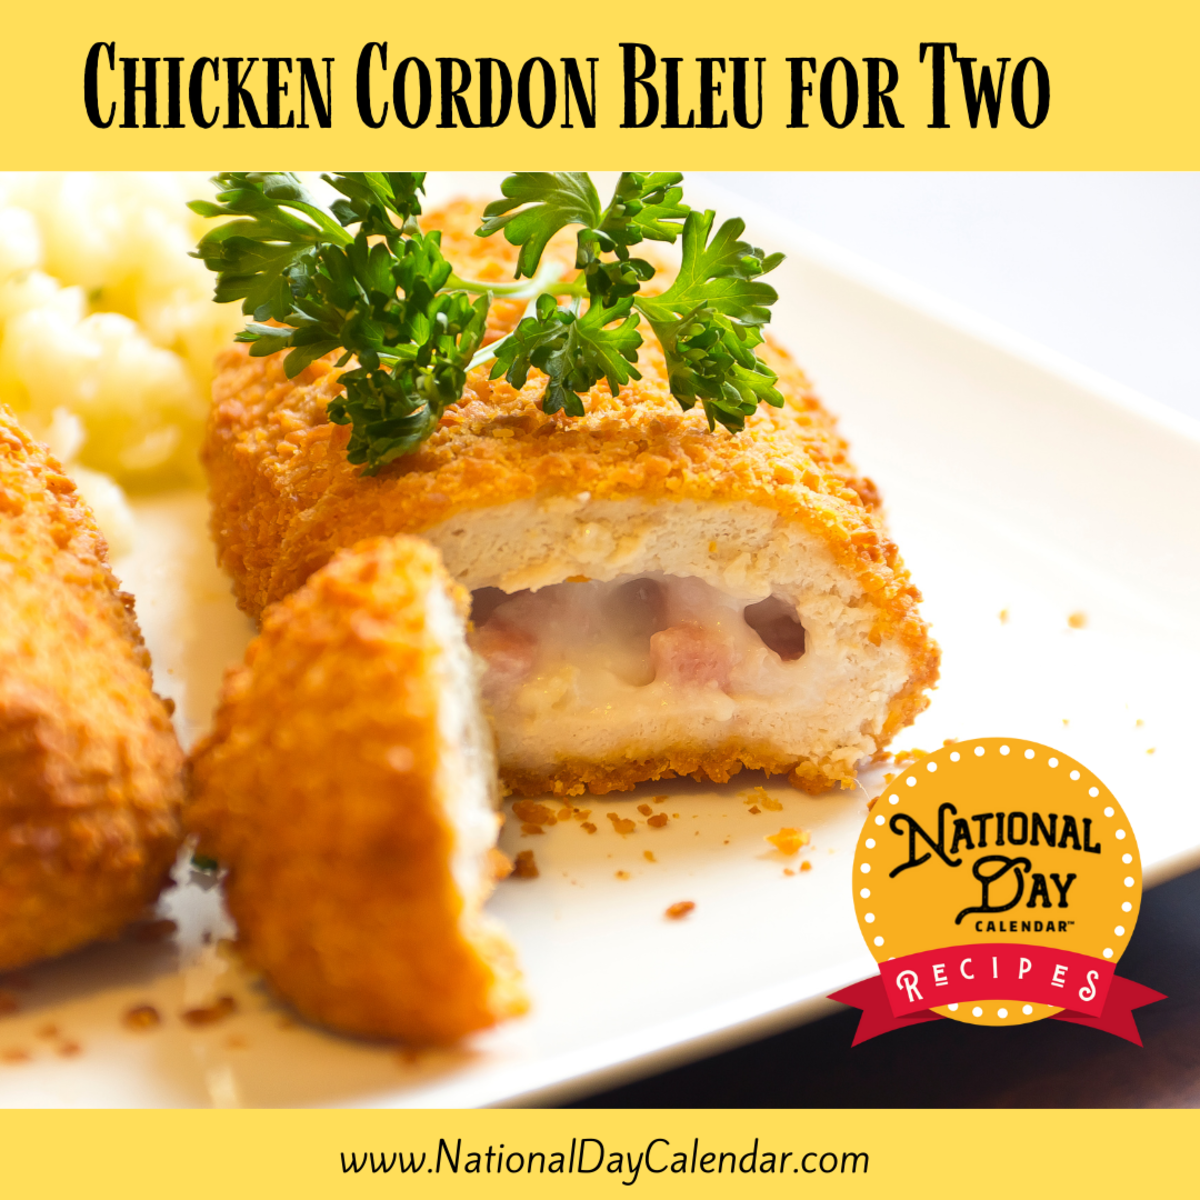 Chicken Cordon Bleu for Two recipe